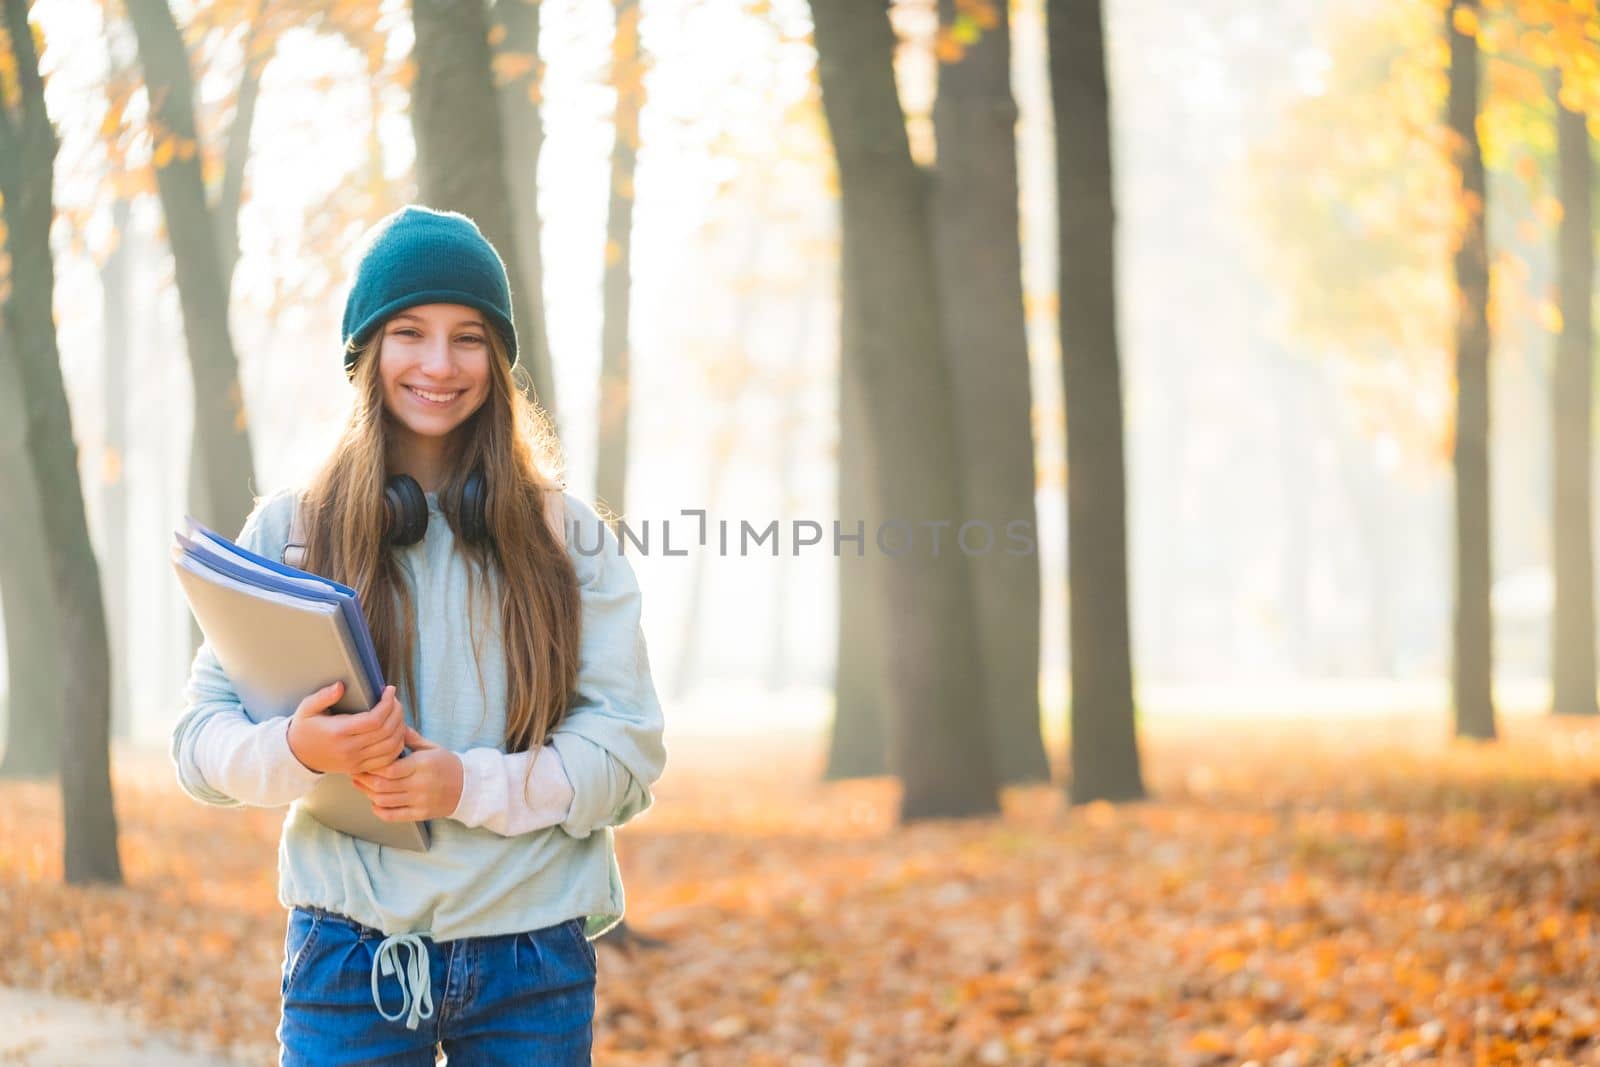 Happy school girl in autumn park by GekaSkr